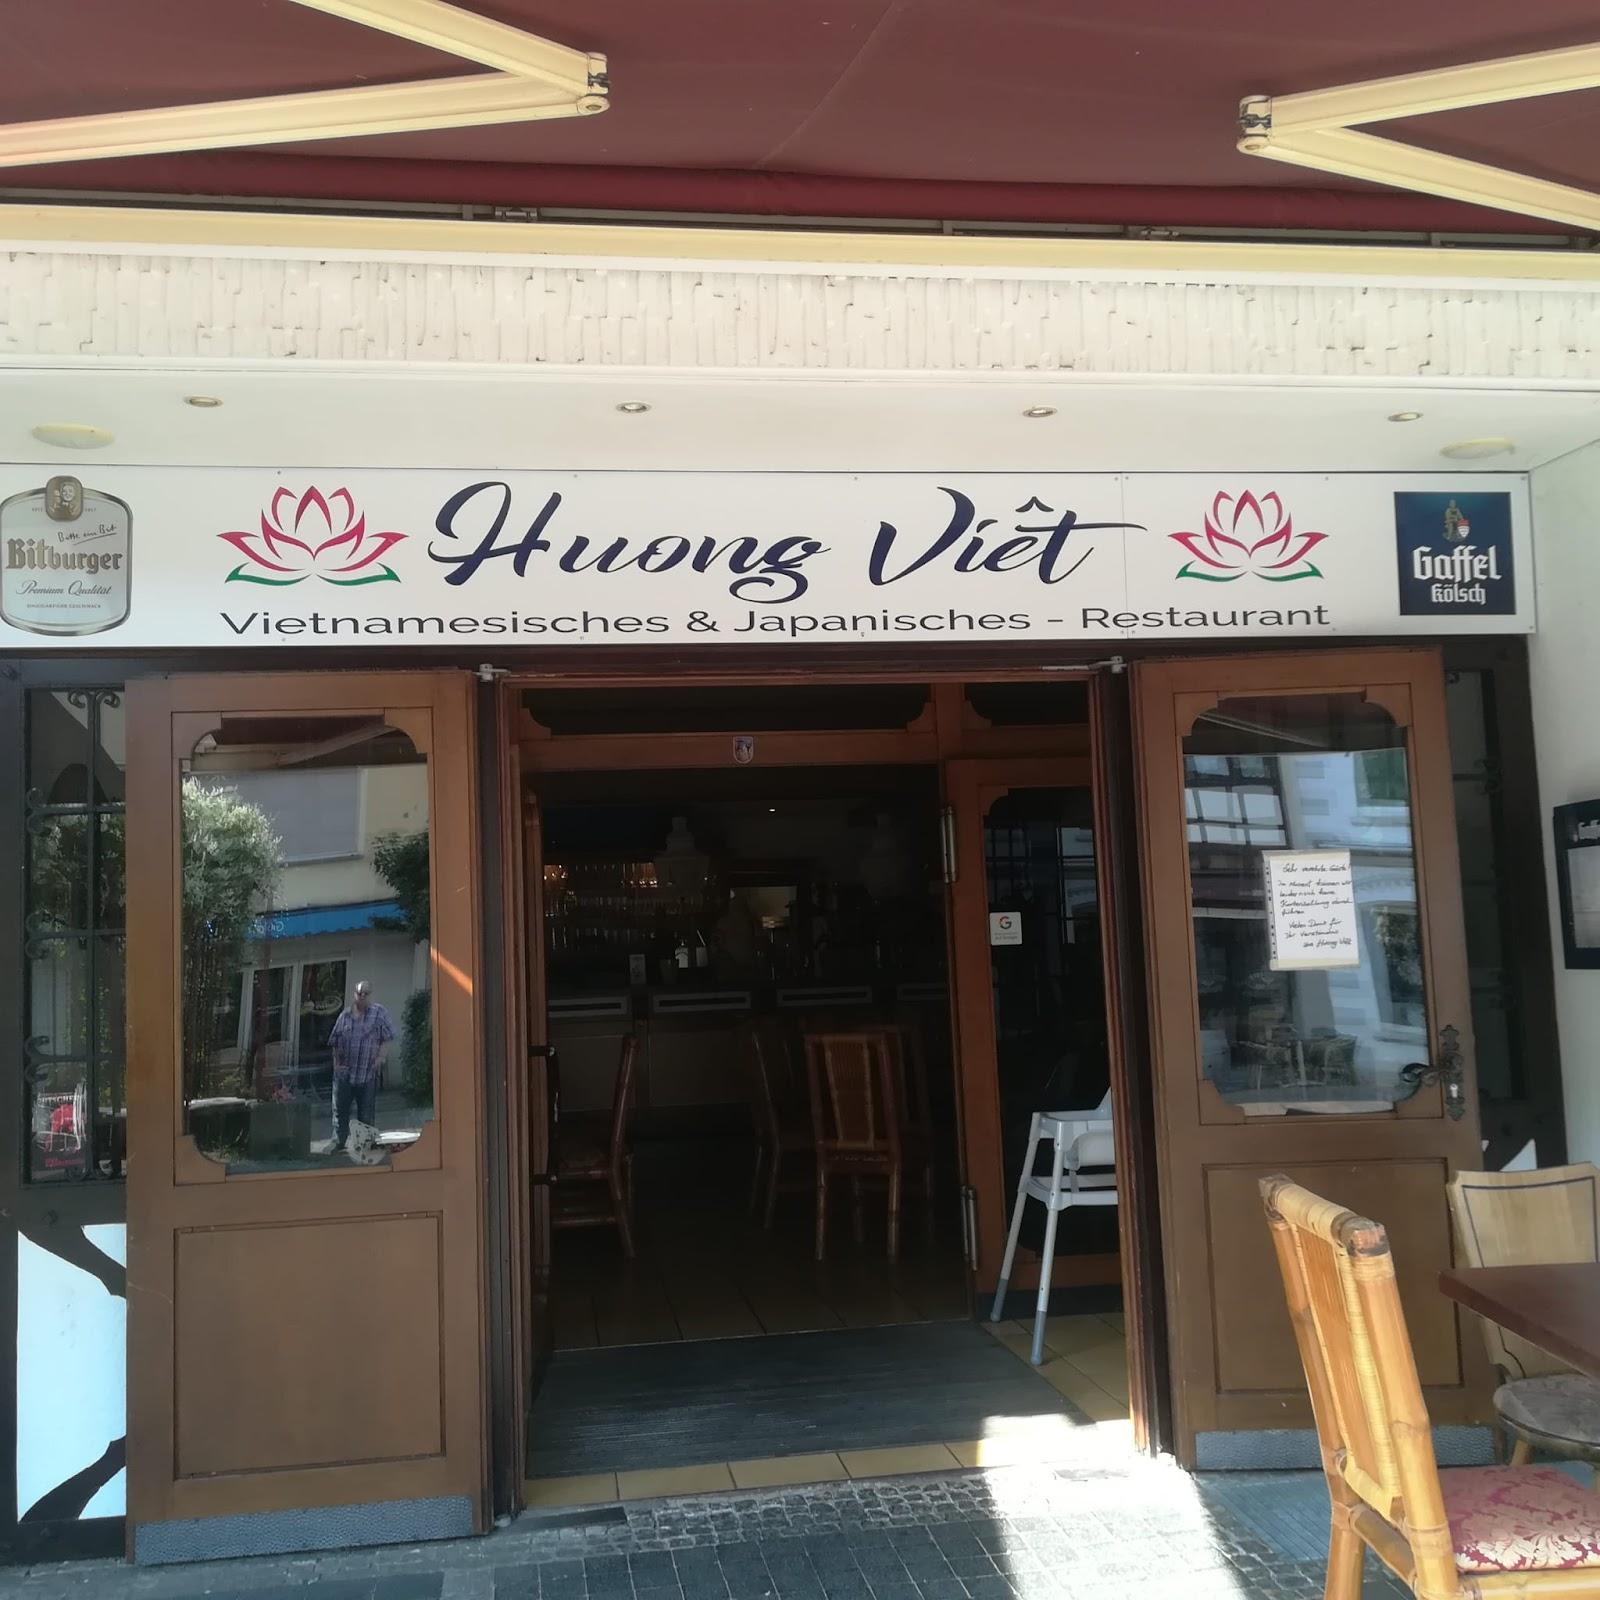 Restaurant "Huong Viet" in Bad Hönningen